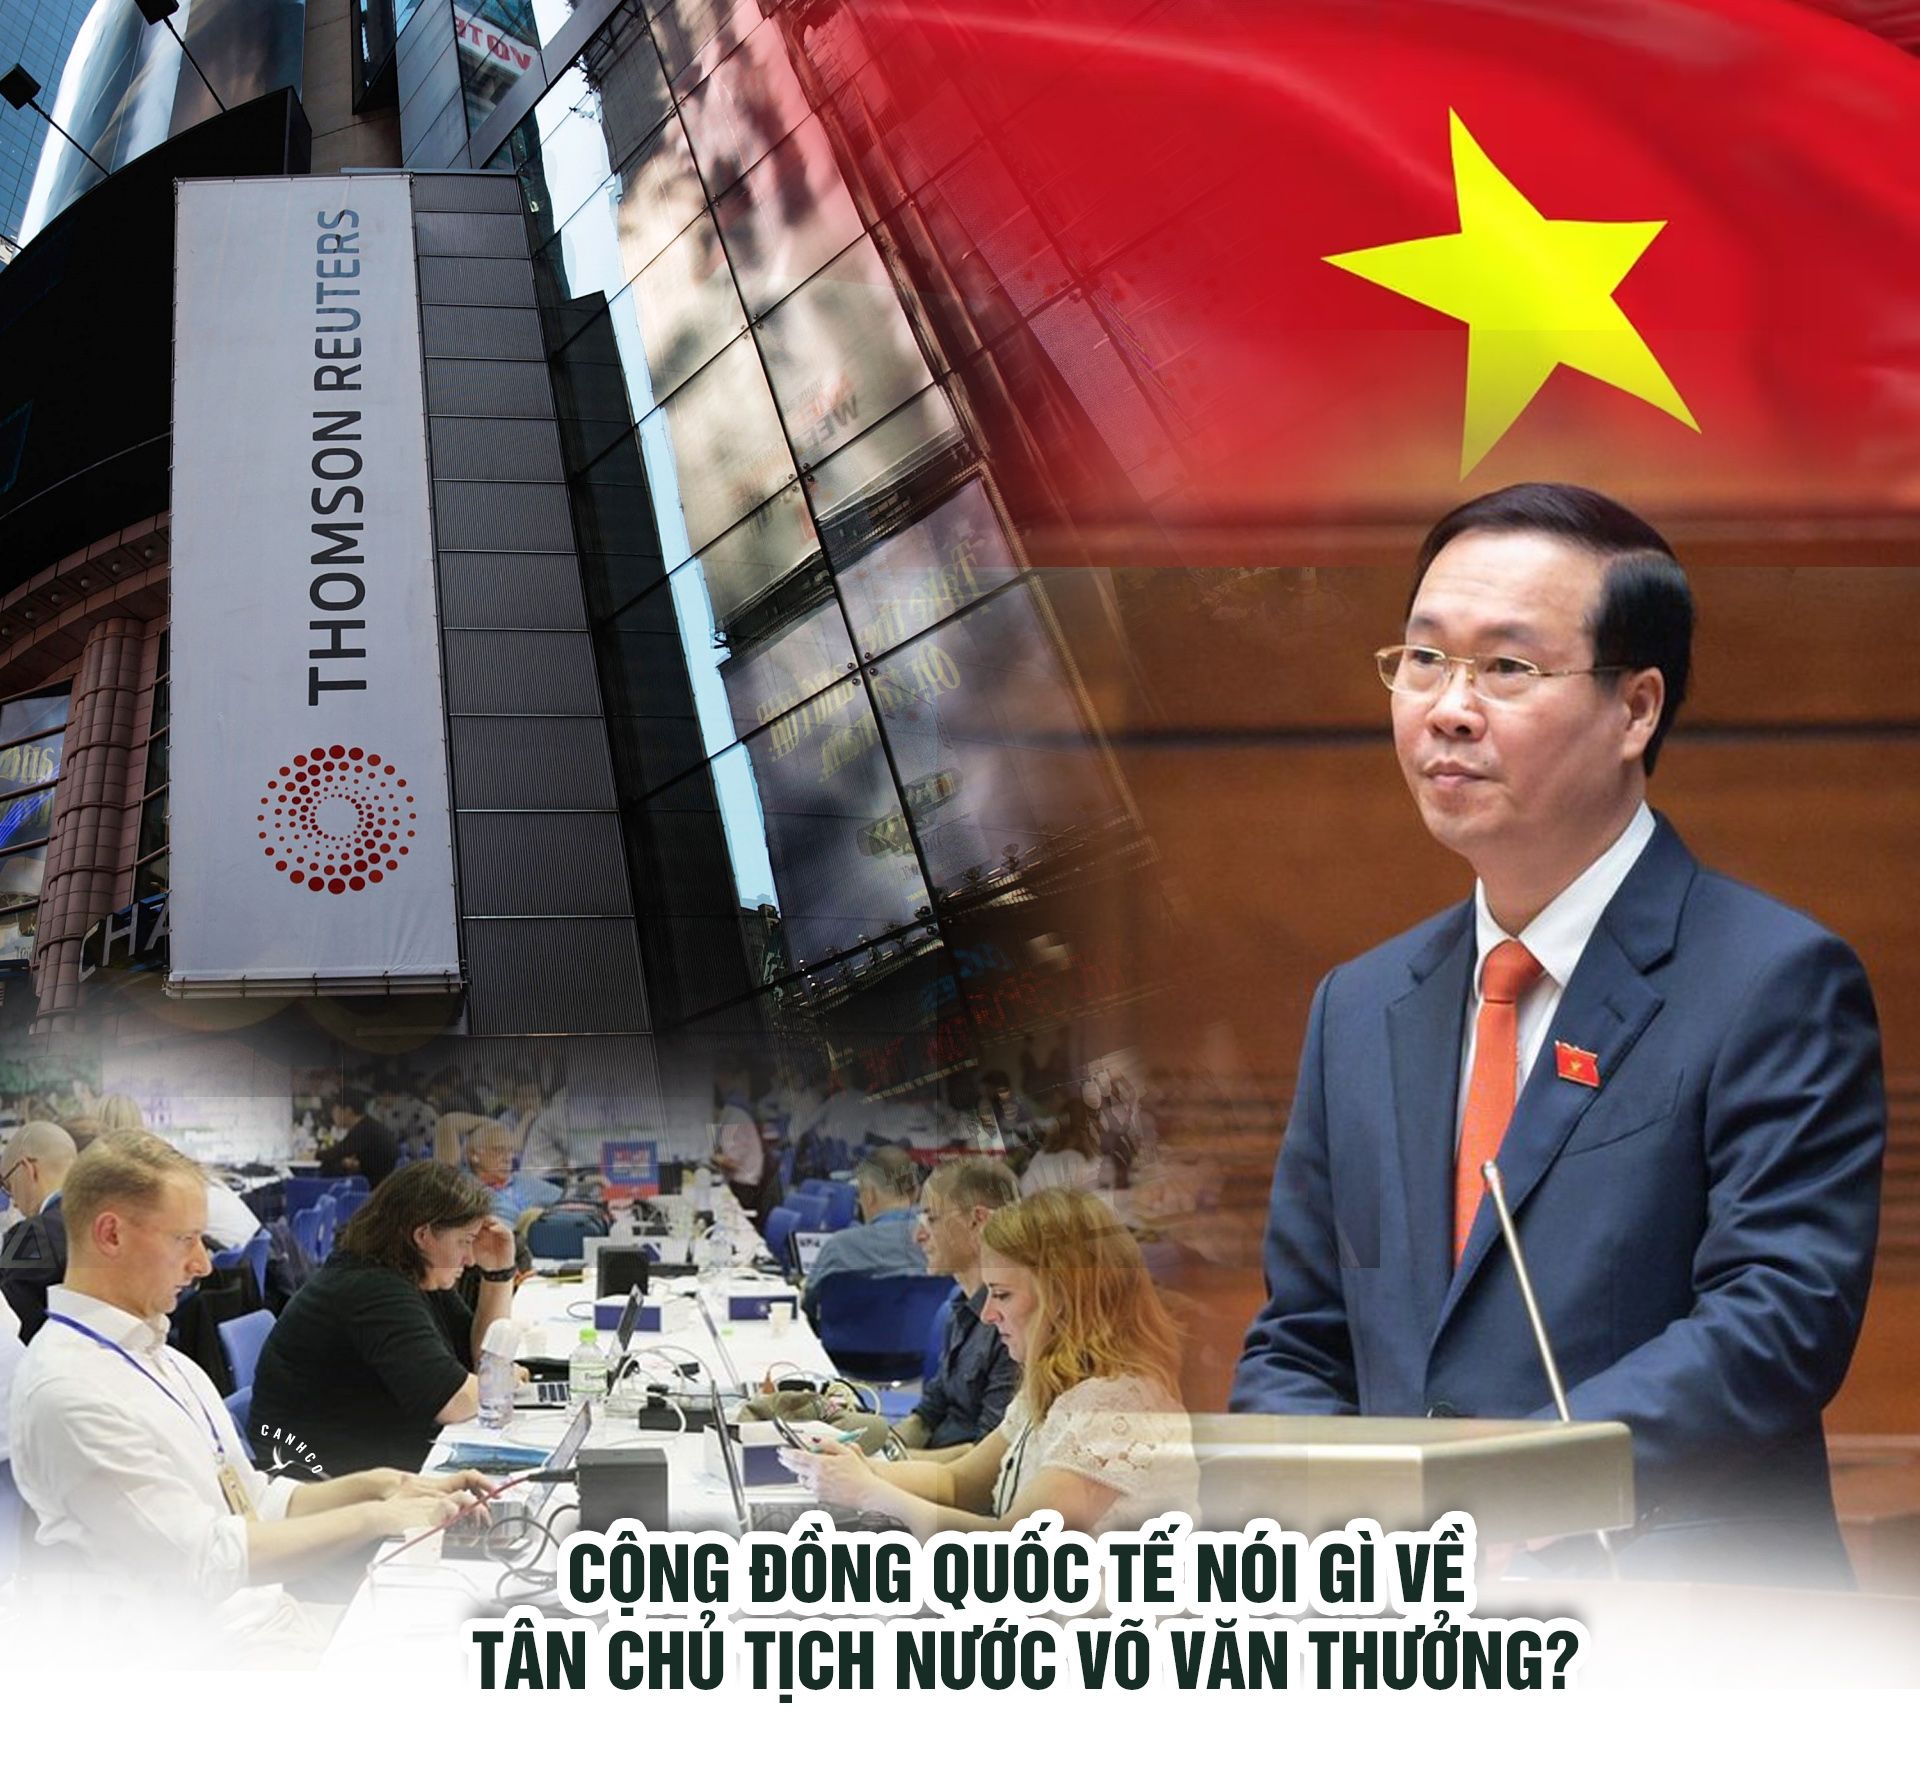 Cộng đồng quốc tế nói gì về Tân Chủ tịch nước Võ Văn Thưởng?